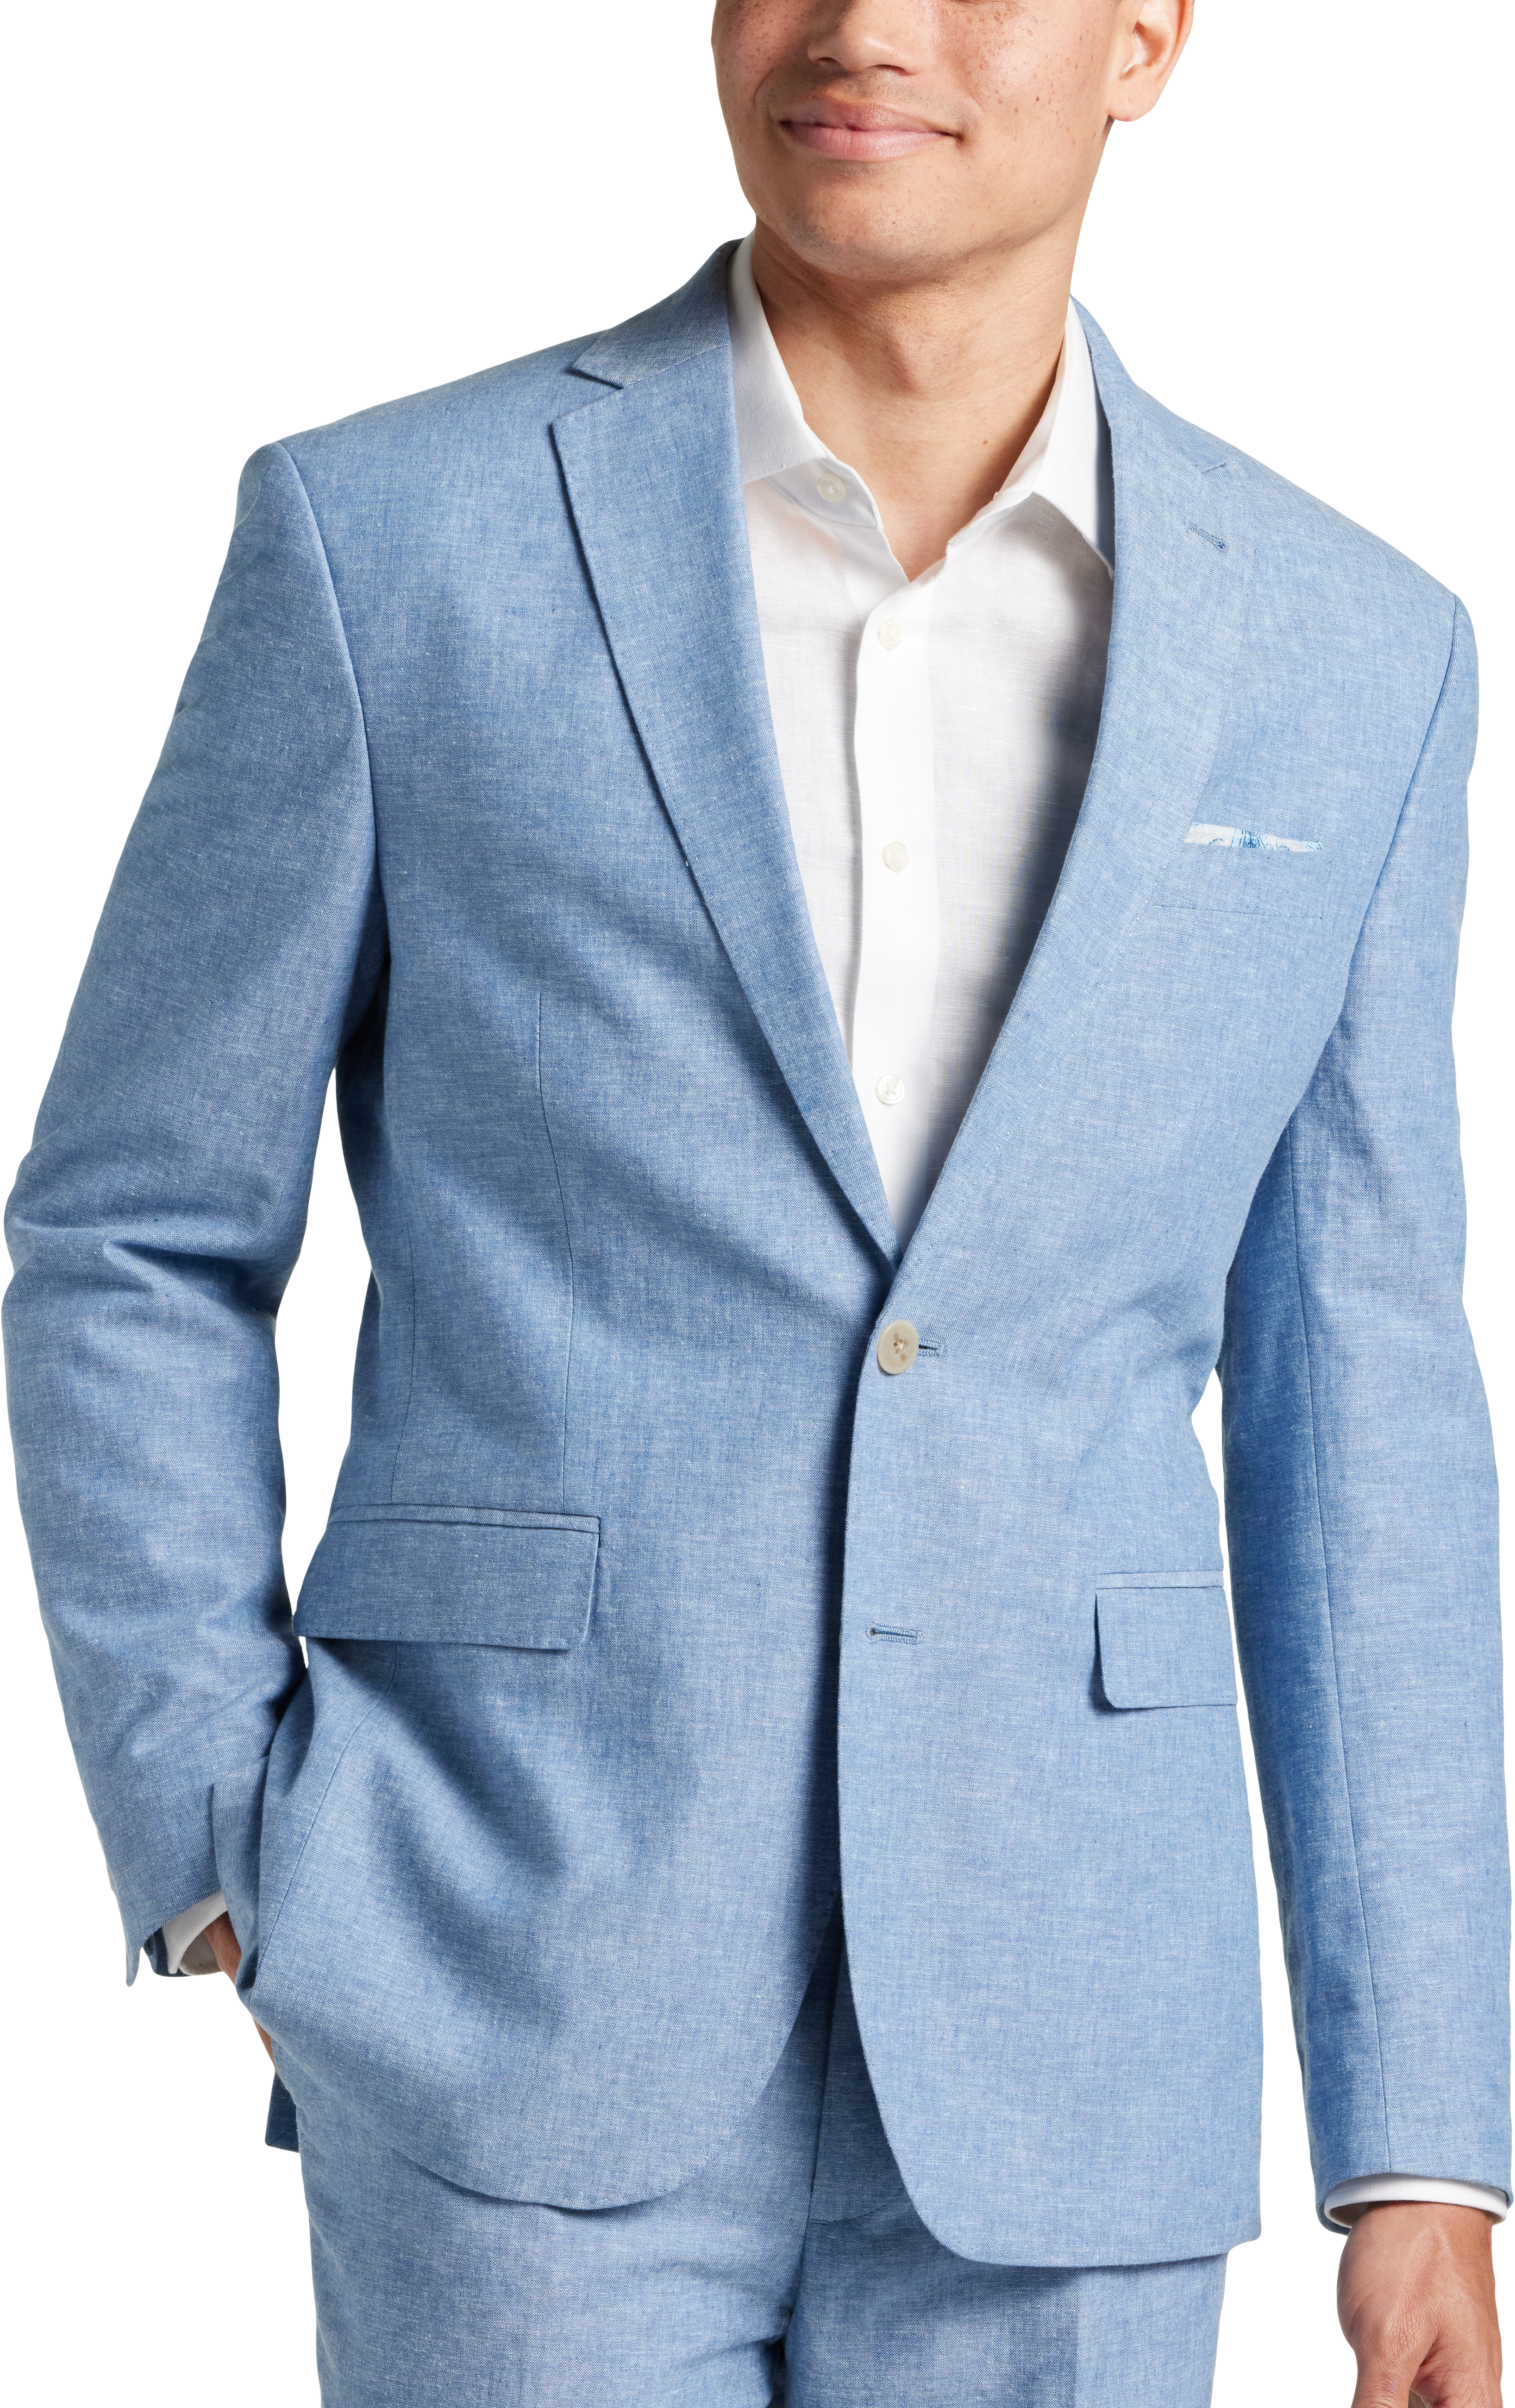 JOE Joseph Abboud Slim Fit Linen Blend Suit Separates Coat, Dusty Blue ...